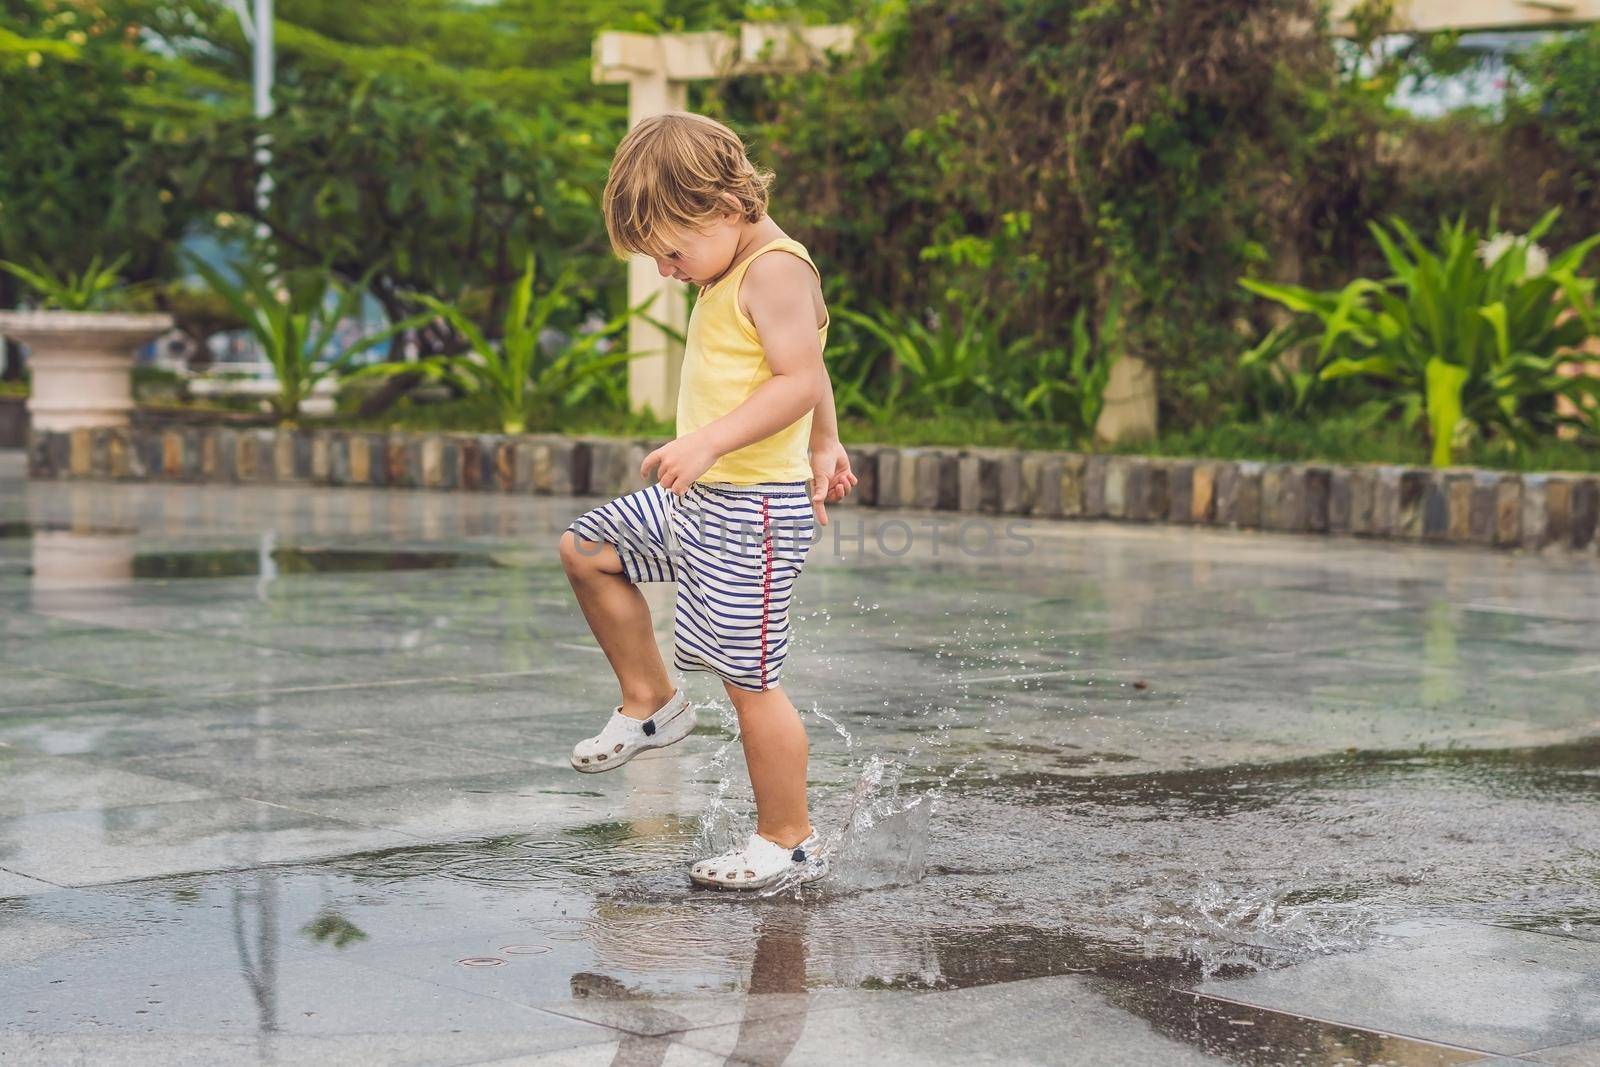 Little boy runs through a puddle. summer outdoor by galitskaya